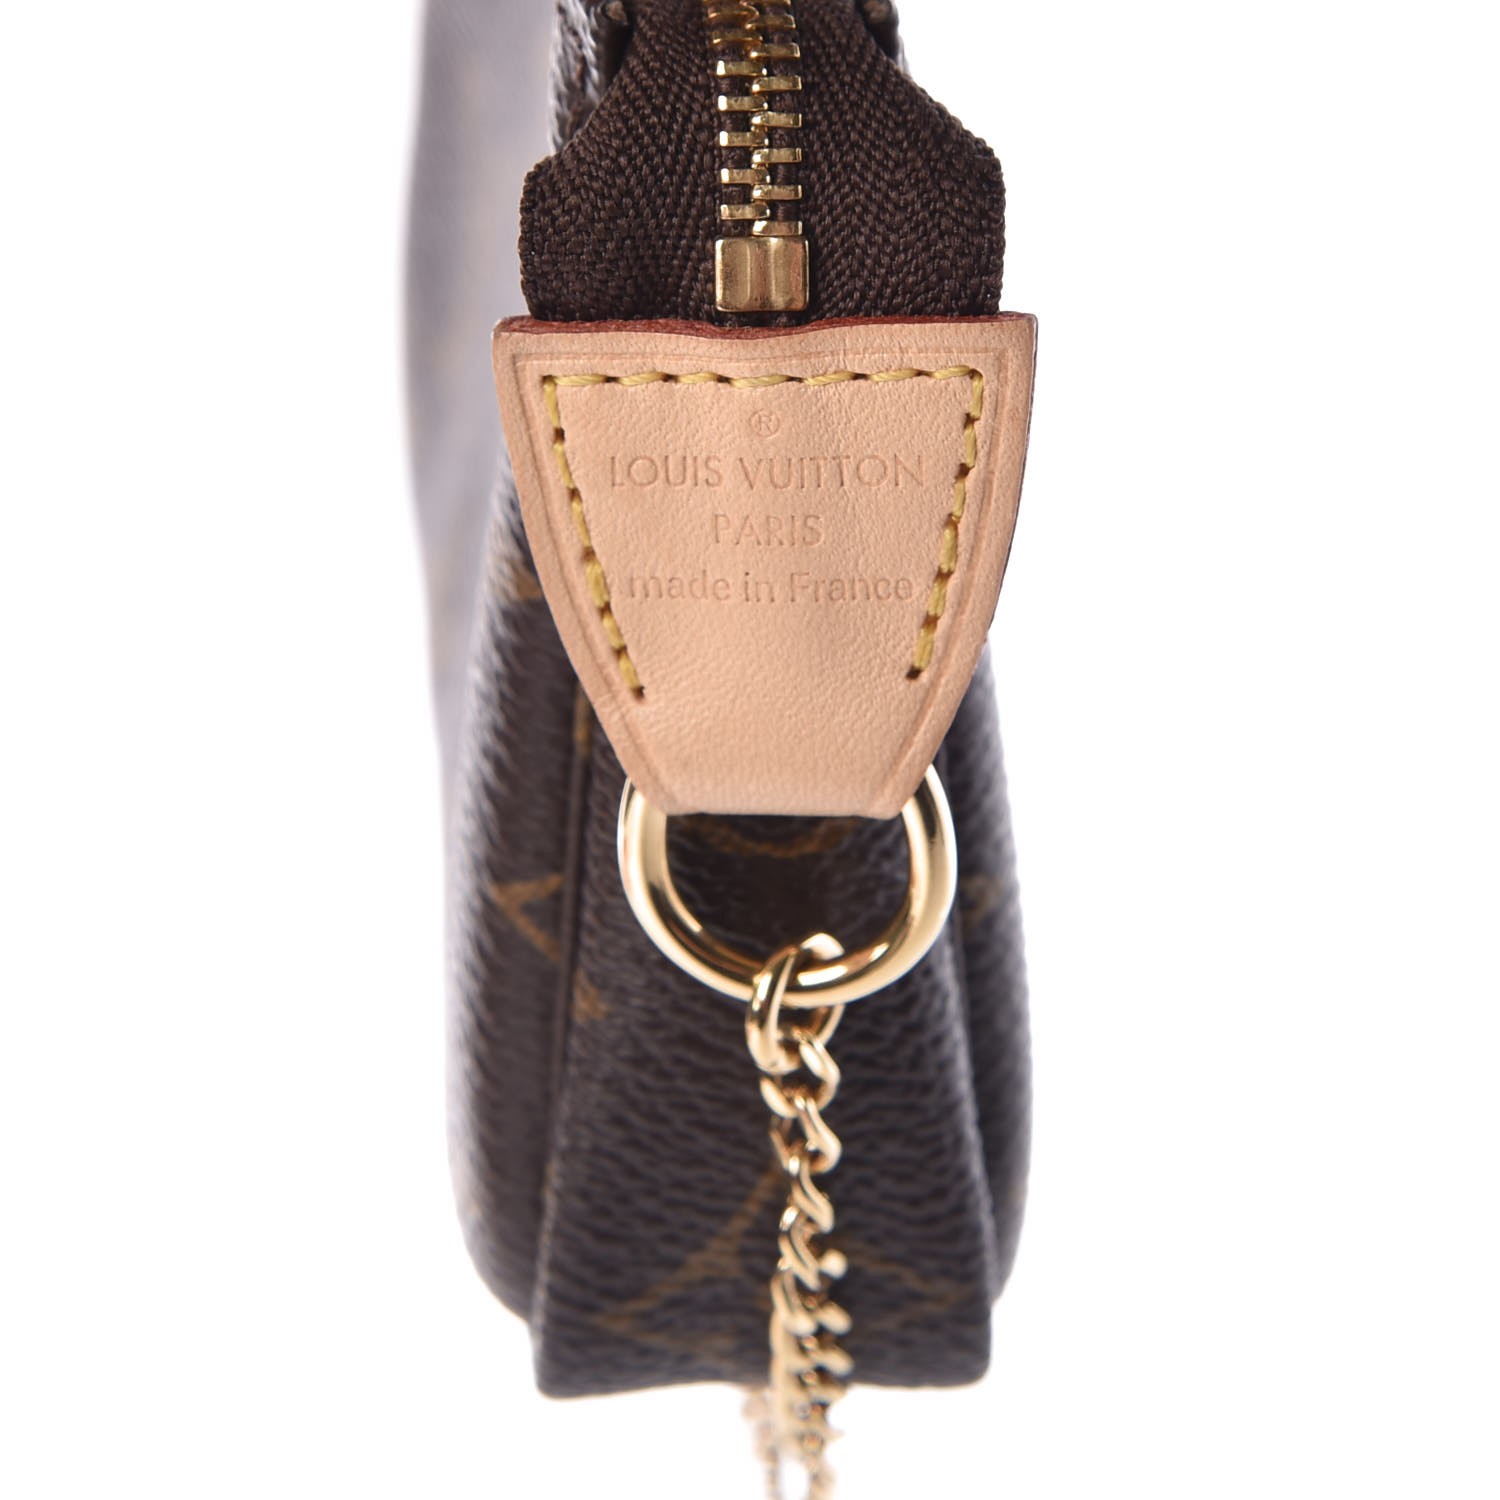 Unboxing] Louis Vuitton Mini Pochette Accessoires (Black) 